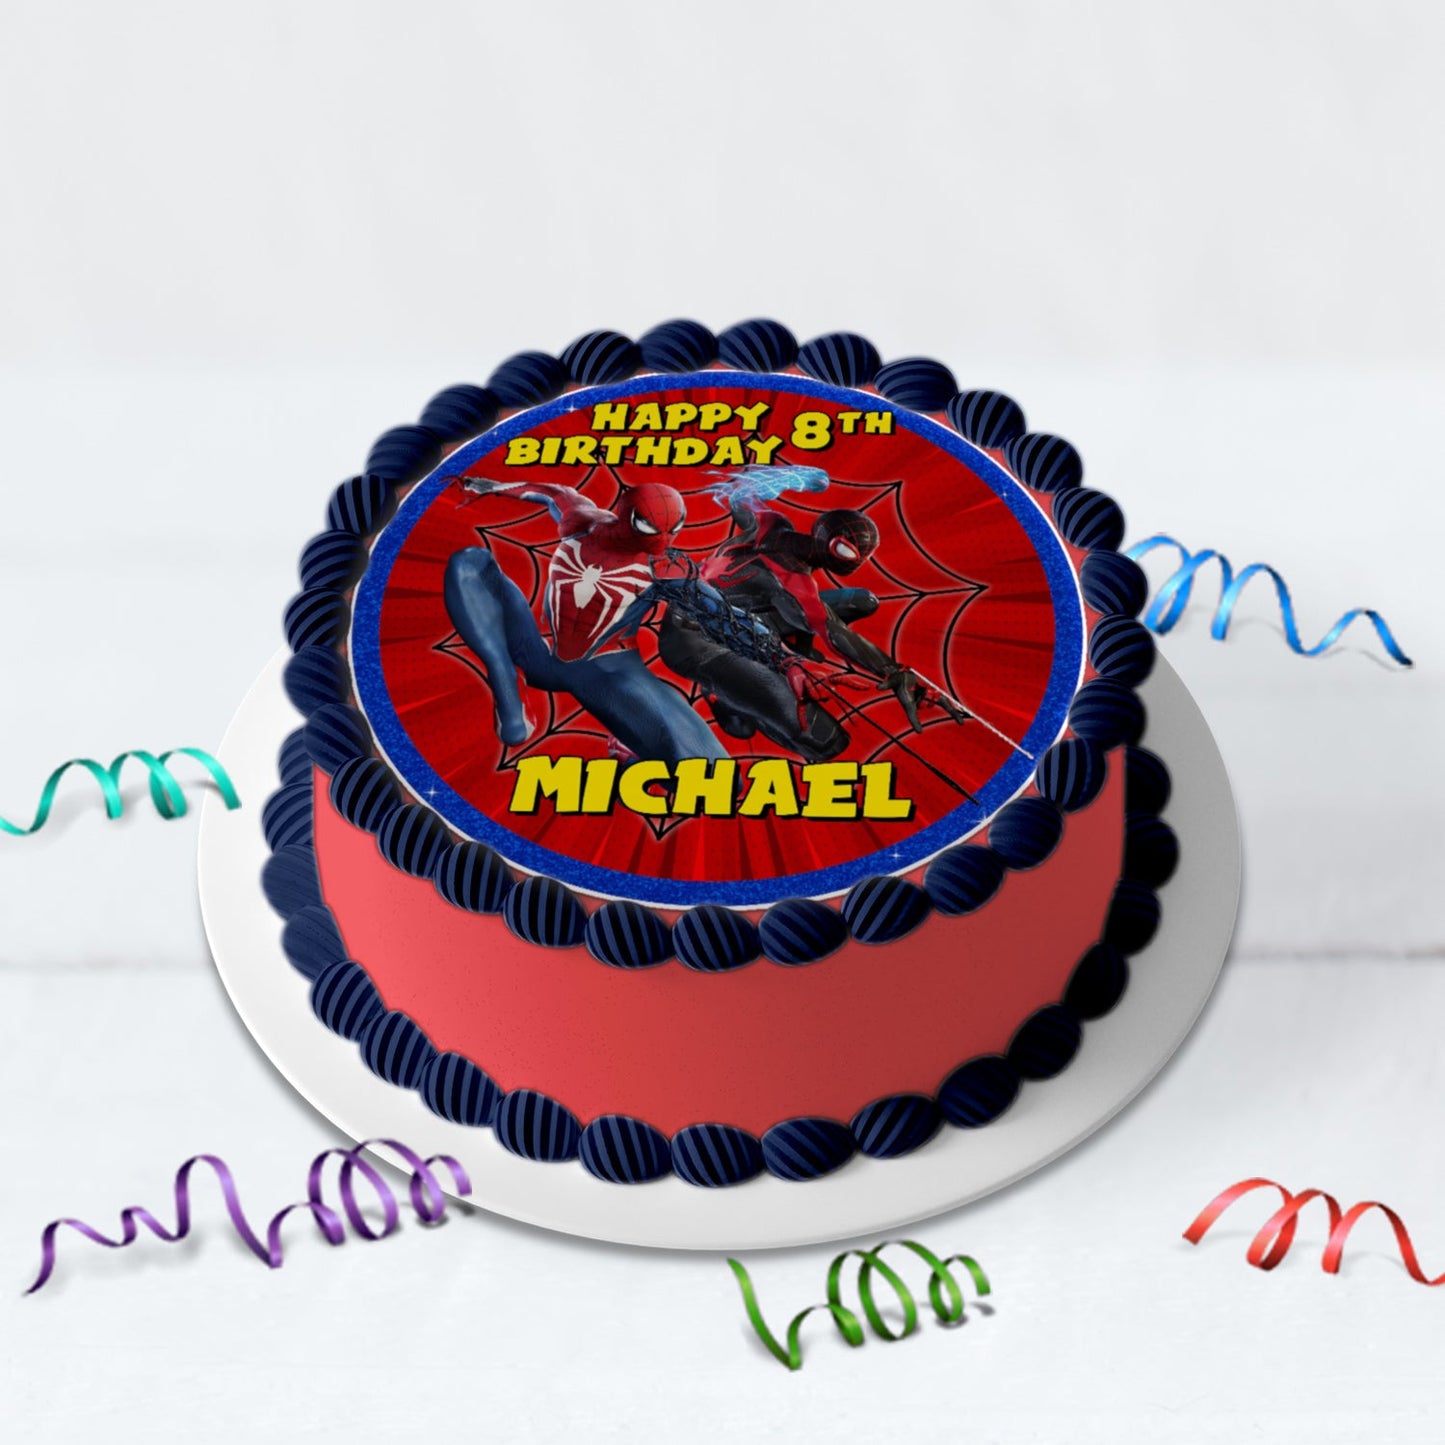 Spiderman Birthday Decorations, Spiderman Marvel Party Supplies, Super Heroes, Spider-Man, Spiderman SVG